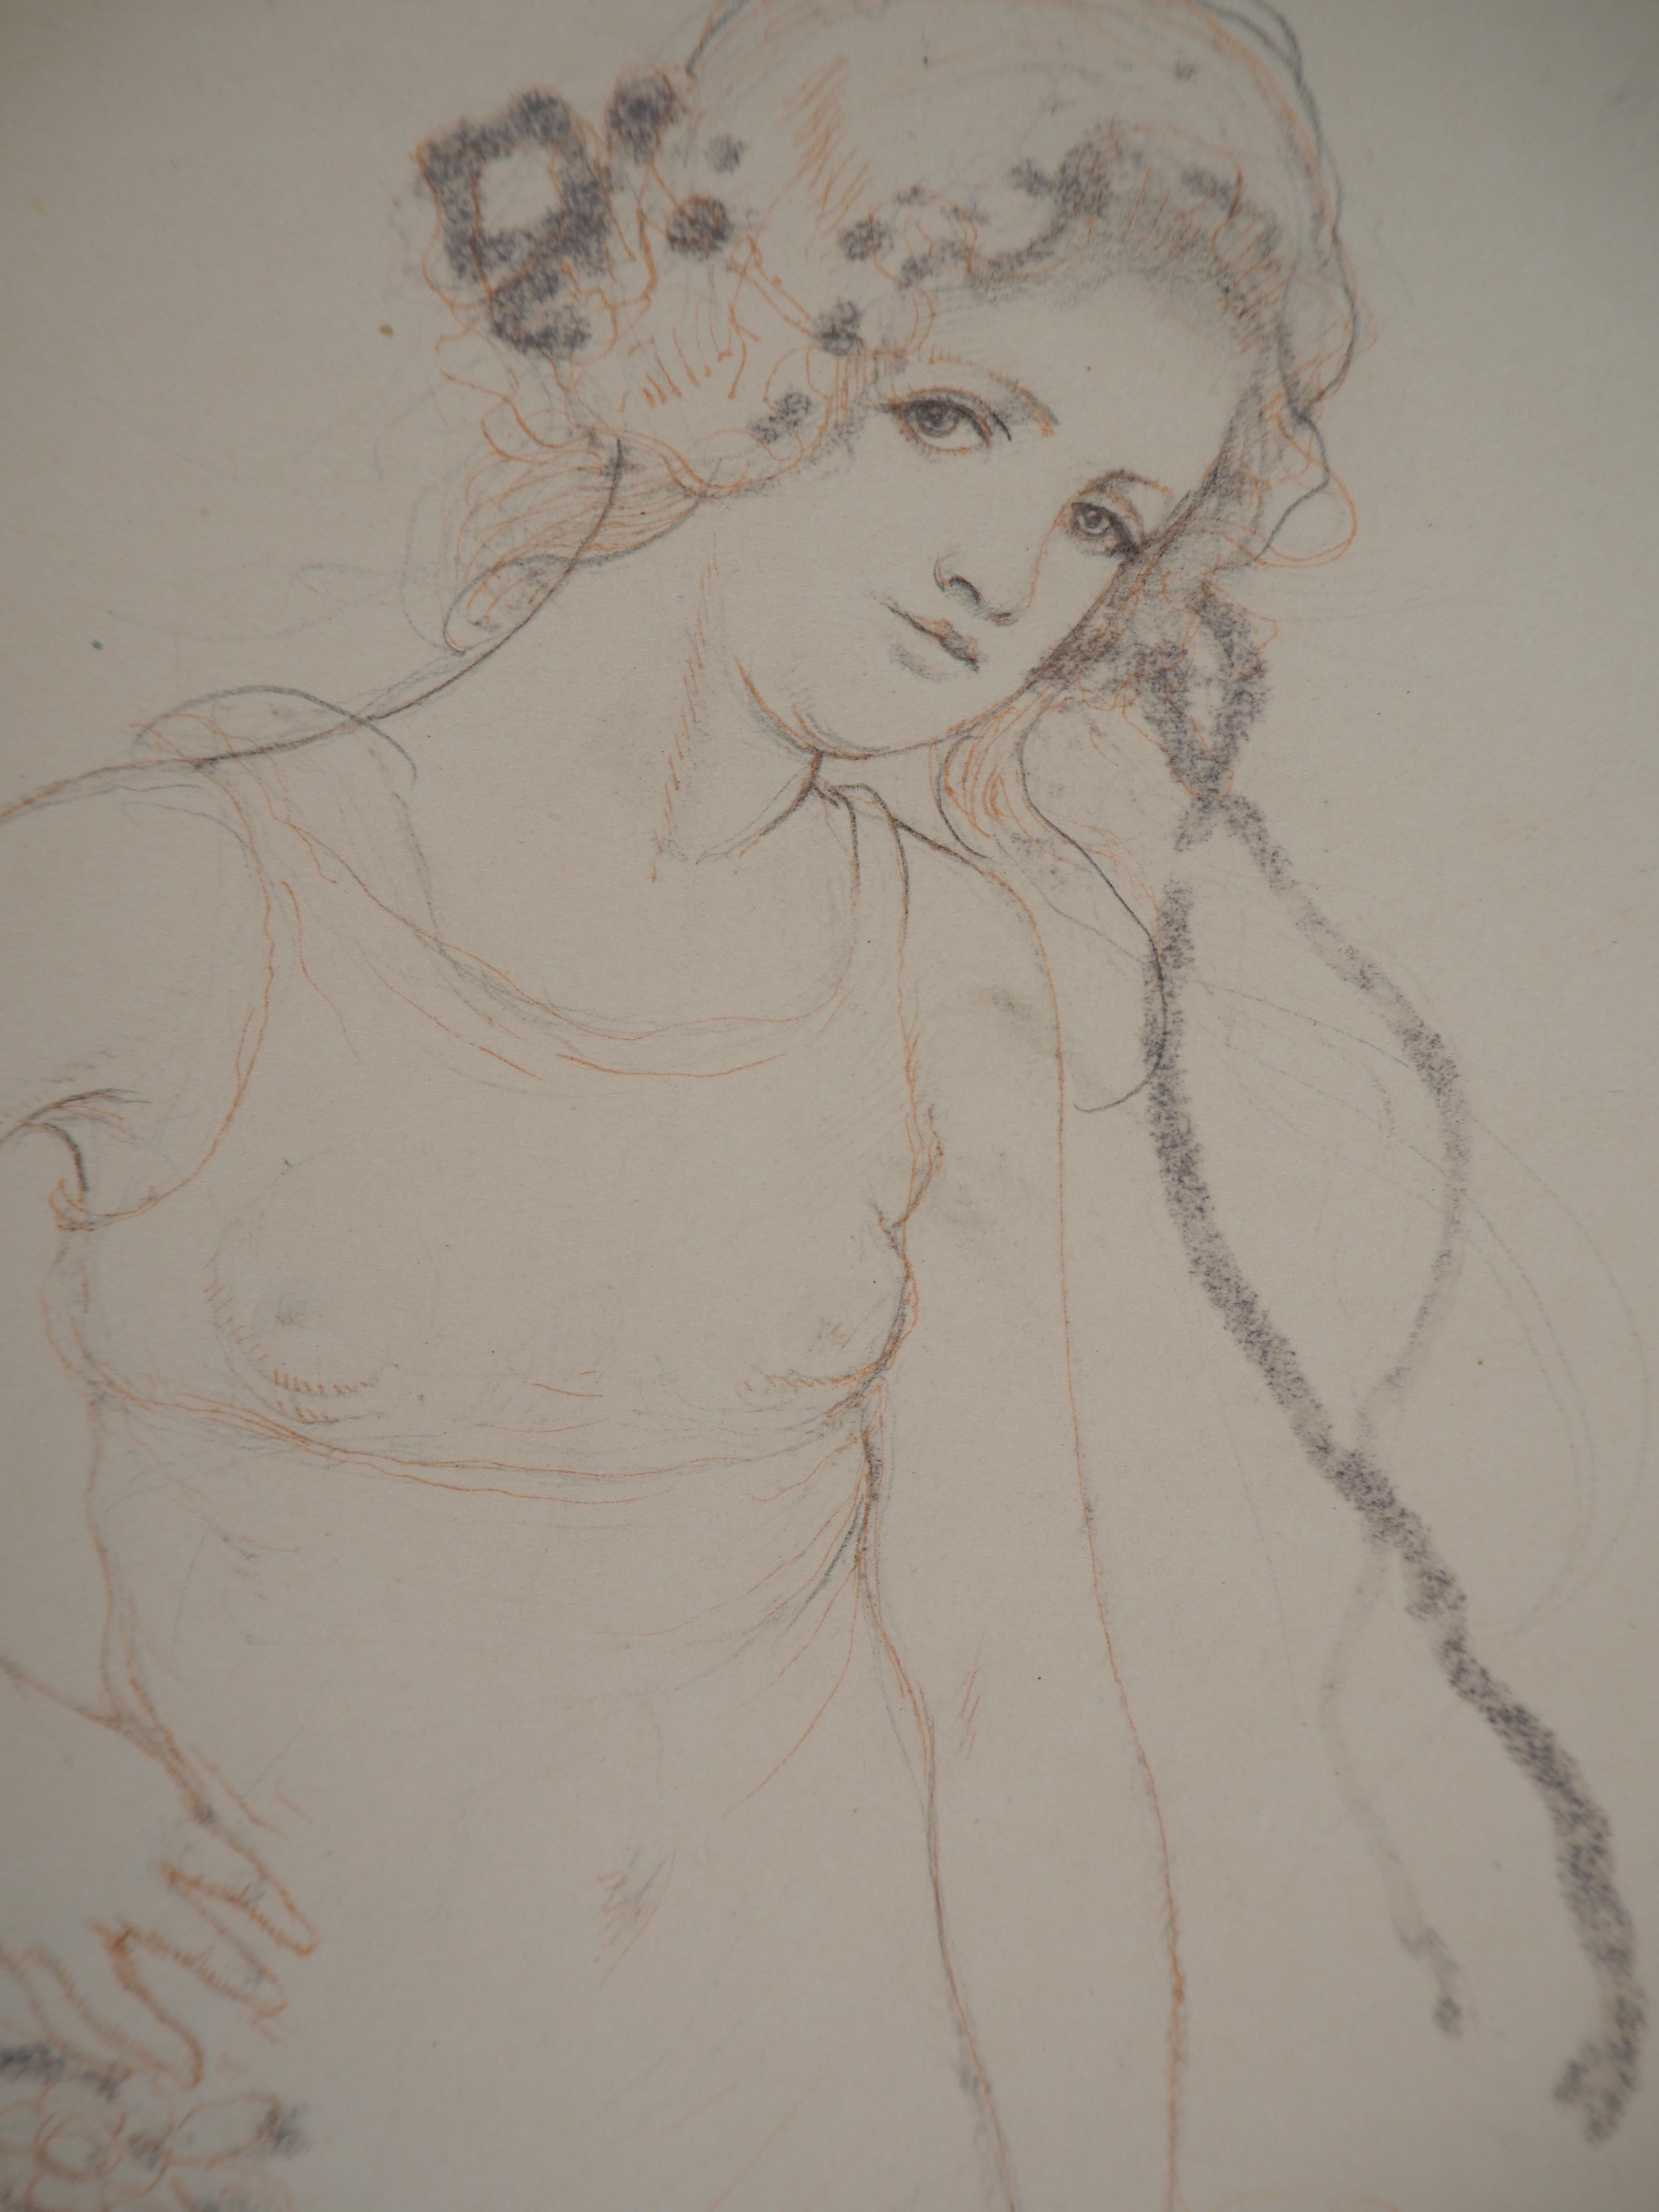 Armand Rassenfosse (1862-1934)
Jeune fille avec des fleurs, 1928

Dessin original au crayon avec rehaussement au crayon de couleur 
Signé dans le coin inférieur gauche
Daté de 1928
Sur papier 20,5 x 18,5 cm (c. 8 x 7 in) monté sur vélin 28 x 25 cm